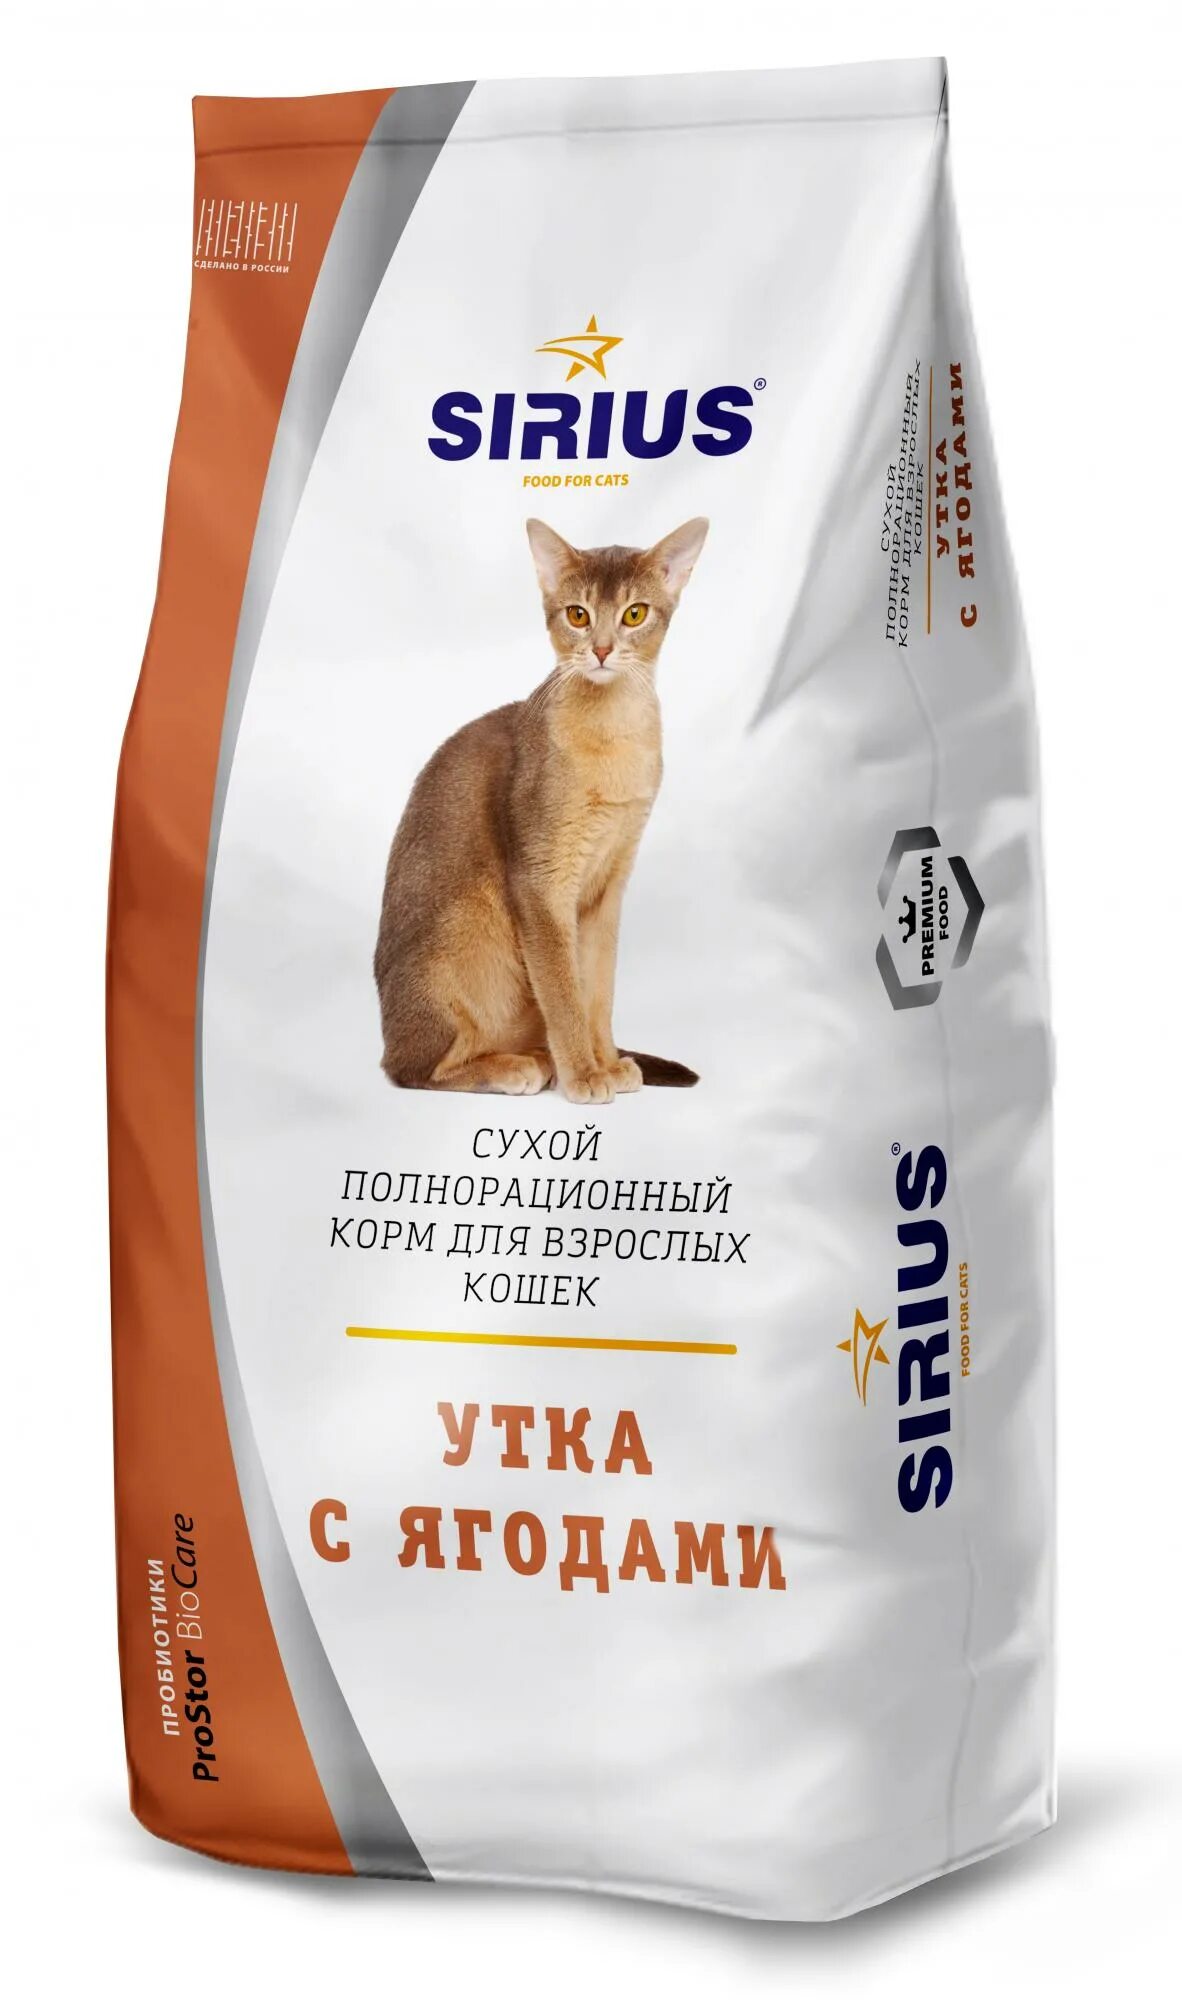 Корм Сириус для кошек лосось и рис. Сириус корм для кошек 10 кг. Sirius Platinum корм. Корм Сириус премиум для кошек. Лучшие производители кормов для кошек